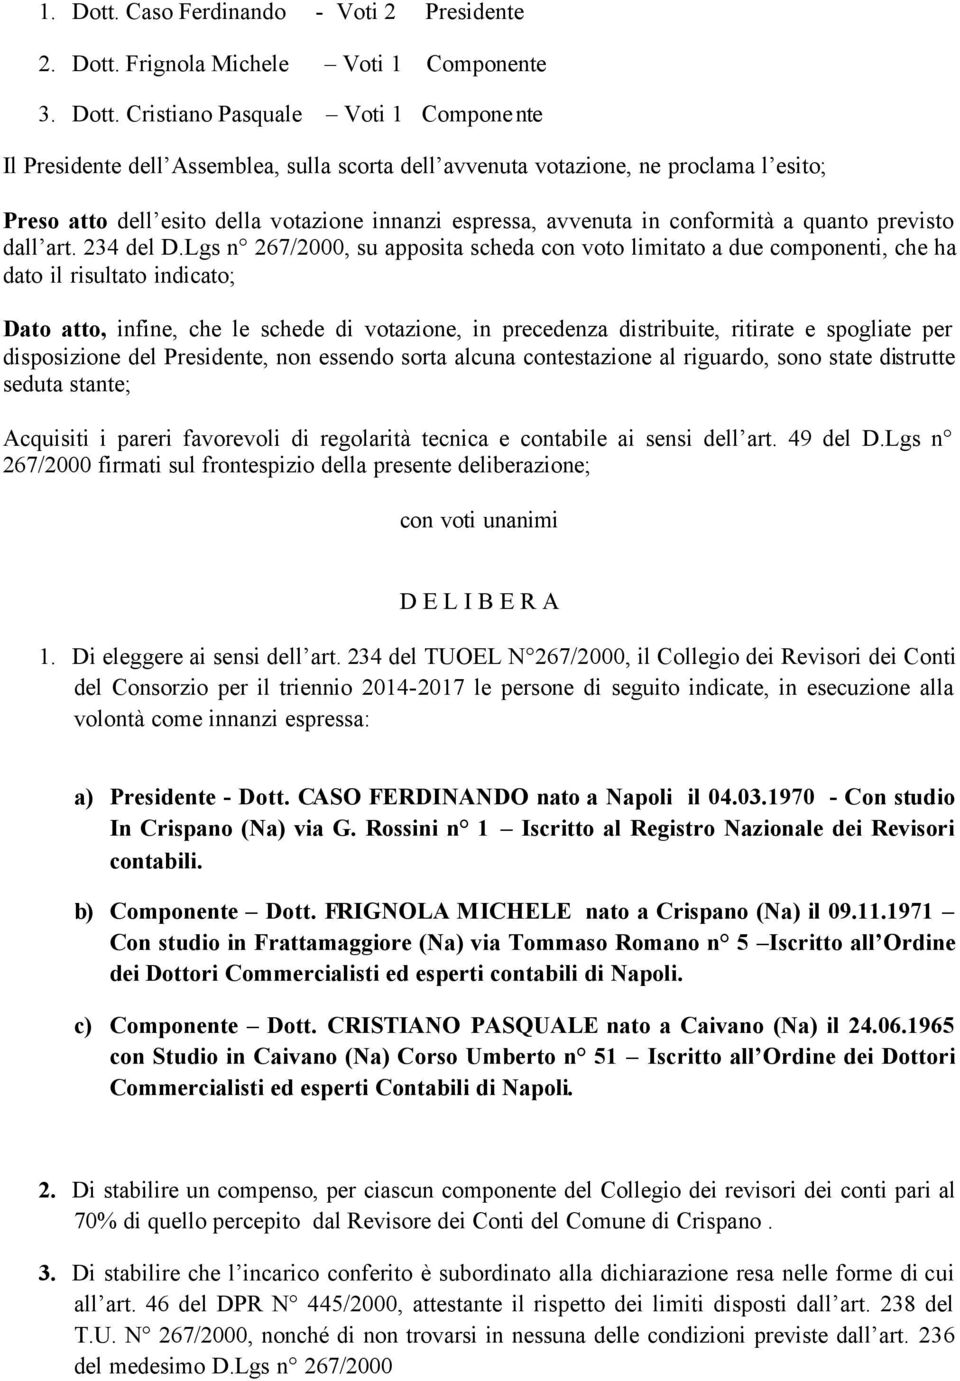 Frignola Michele Voti 1 Componente 3. Dott.